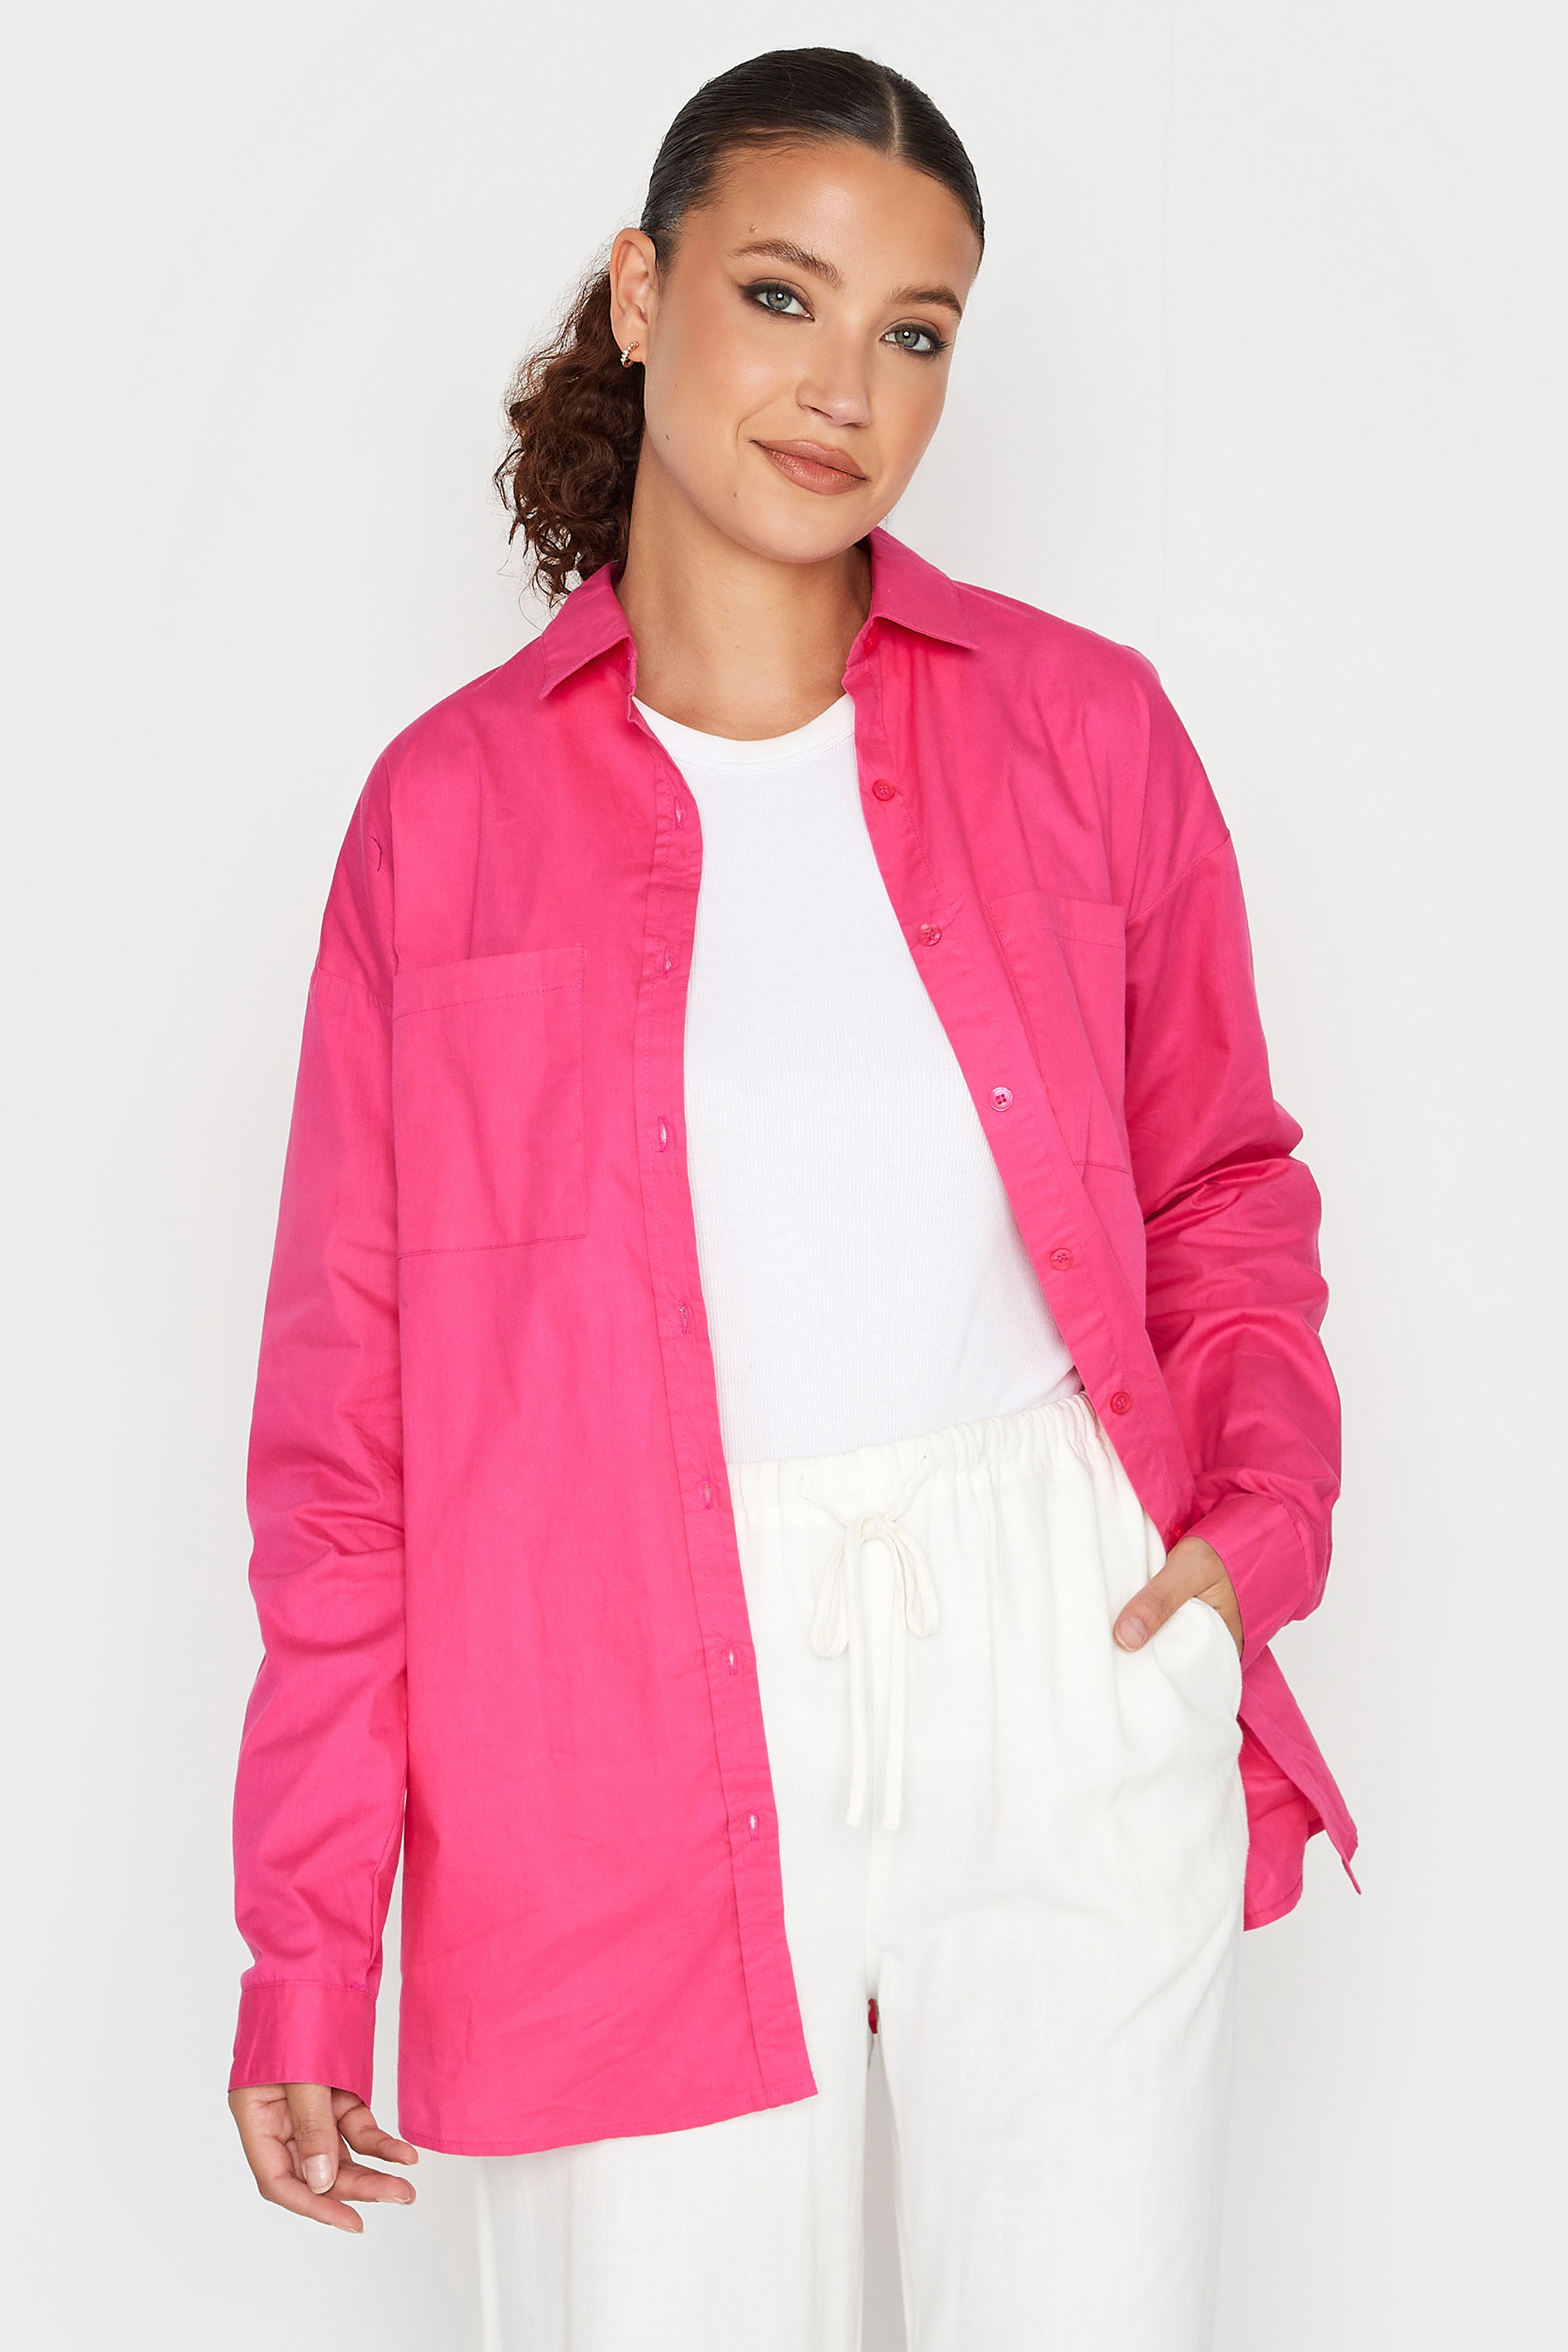 LTS Tall Women's Hot Pink Oversized Cotton Shirt | Long Tall Sally 1